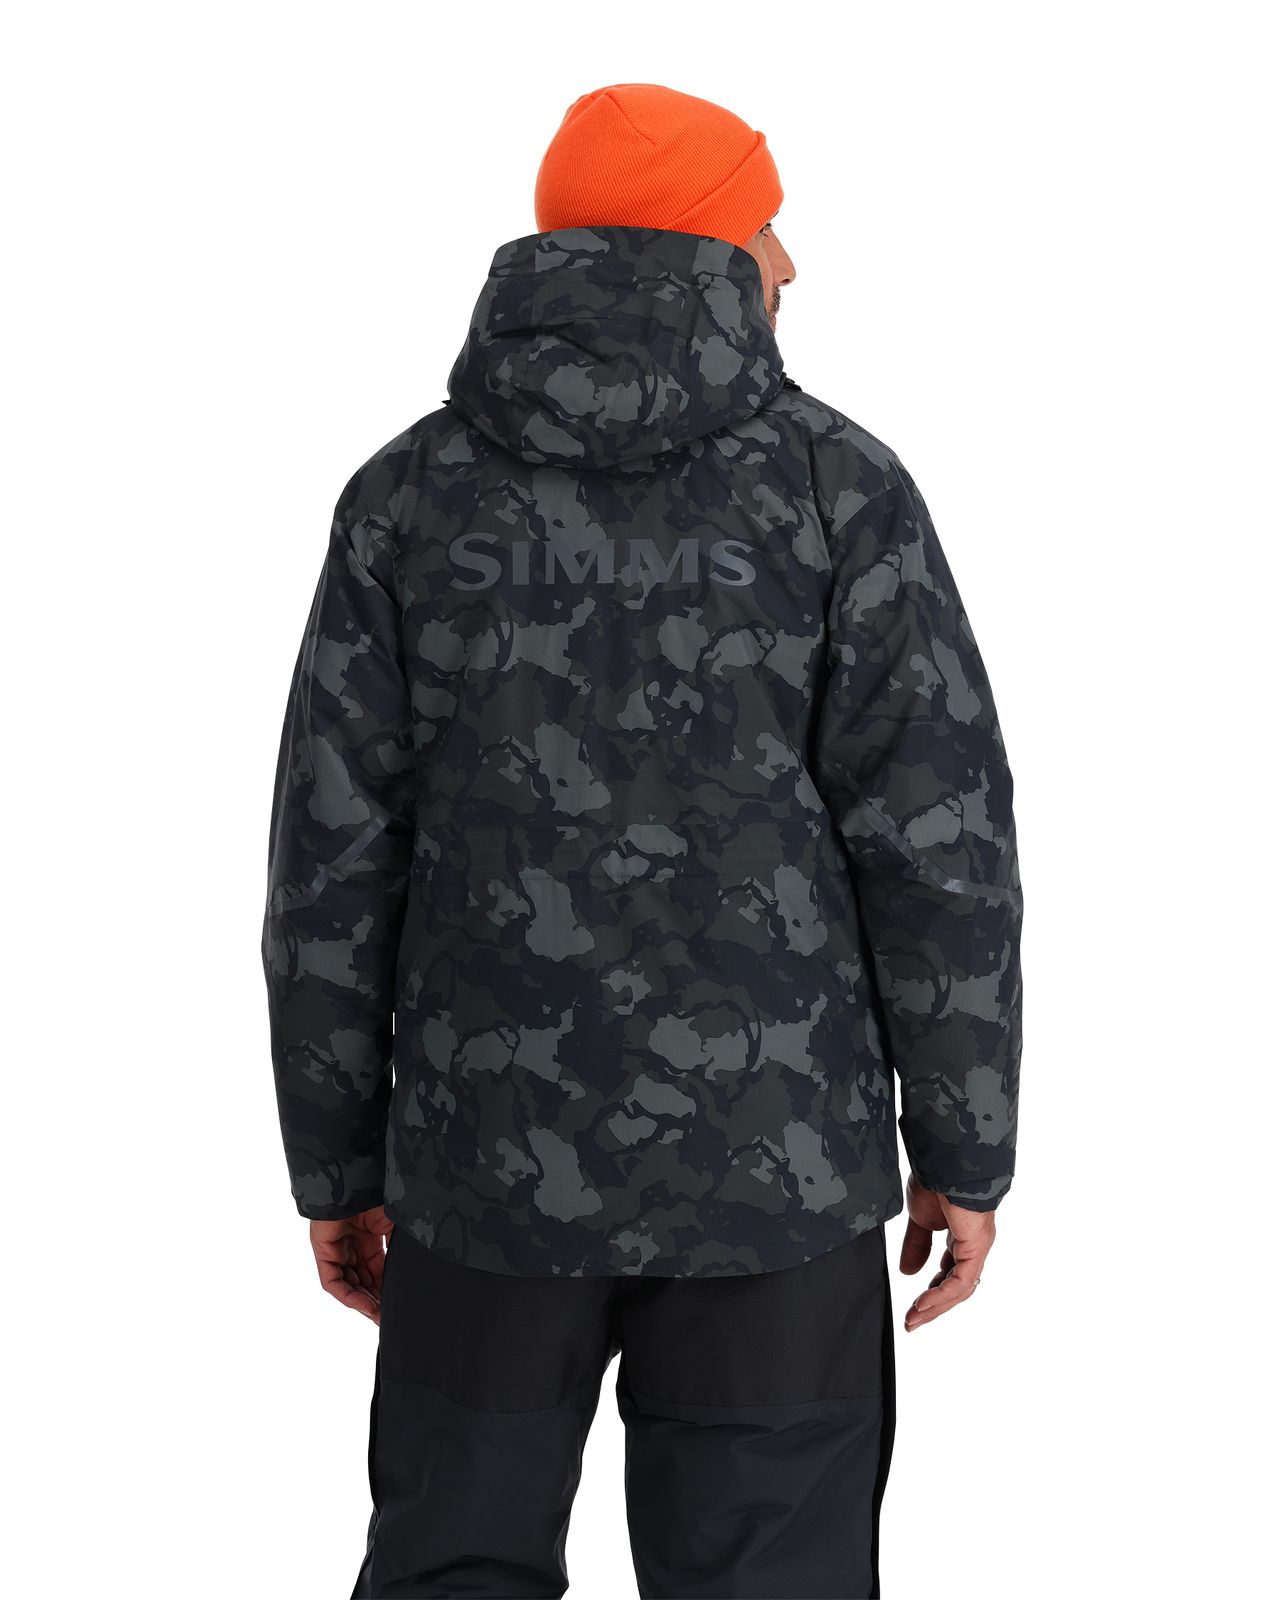 zateplená bunda simms pro jezerní rybaření